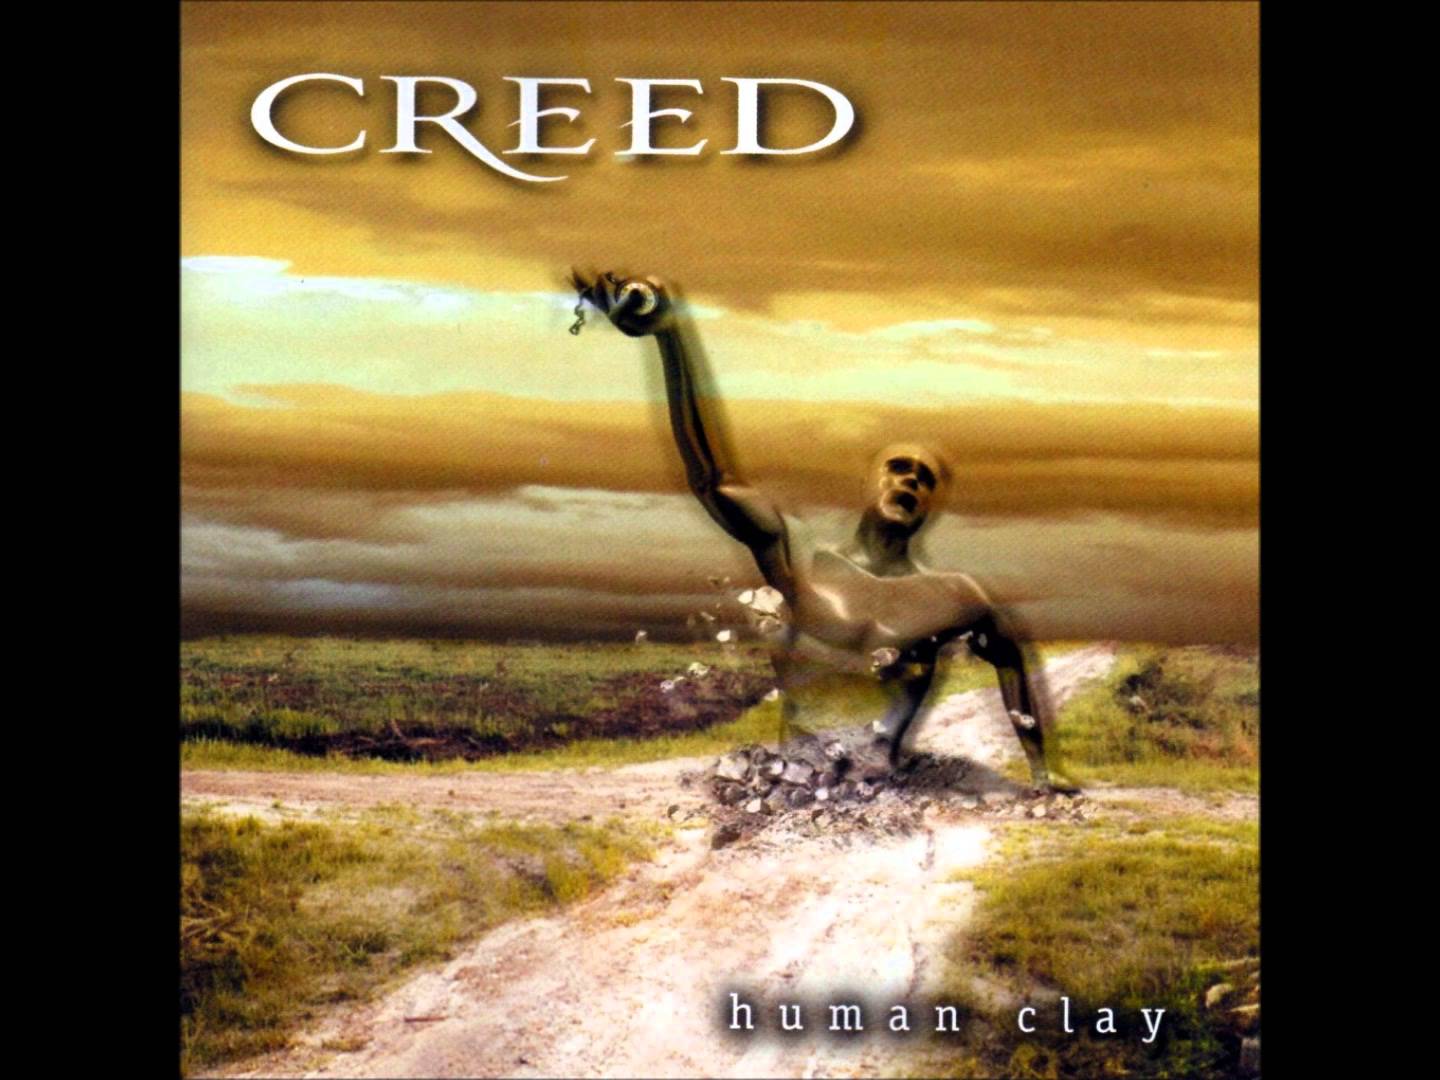 Creed, ‘Human Clay‘ (1999) - 11 millió<br /><br />Scott Stapp és társai ezzel az albummal jó nagyot robbantottak. Nem csak a zenekar, hanem egyenesen az USA egyik legkelendőbb lemeze lett, ráadásul négy dalt is kipattintottak kislemezre. Lehet, hogy nem egy teljesen tökéletes album, de a számok magukért beszélnek.